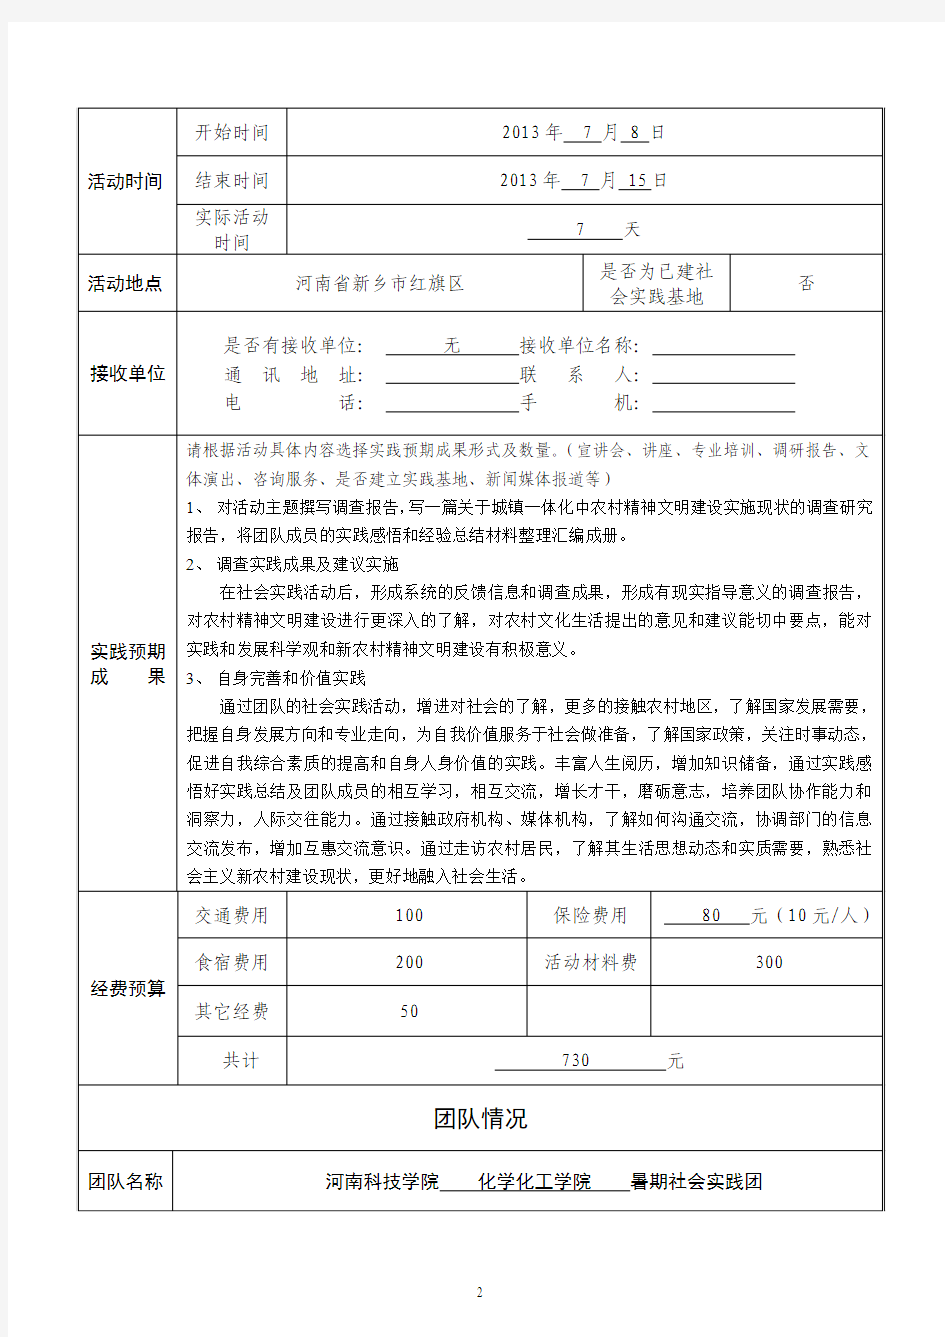 河南科技学院2013年暑期大学生“三下乡”社会实践项目申报通知